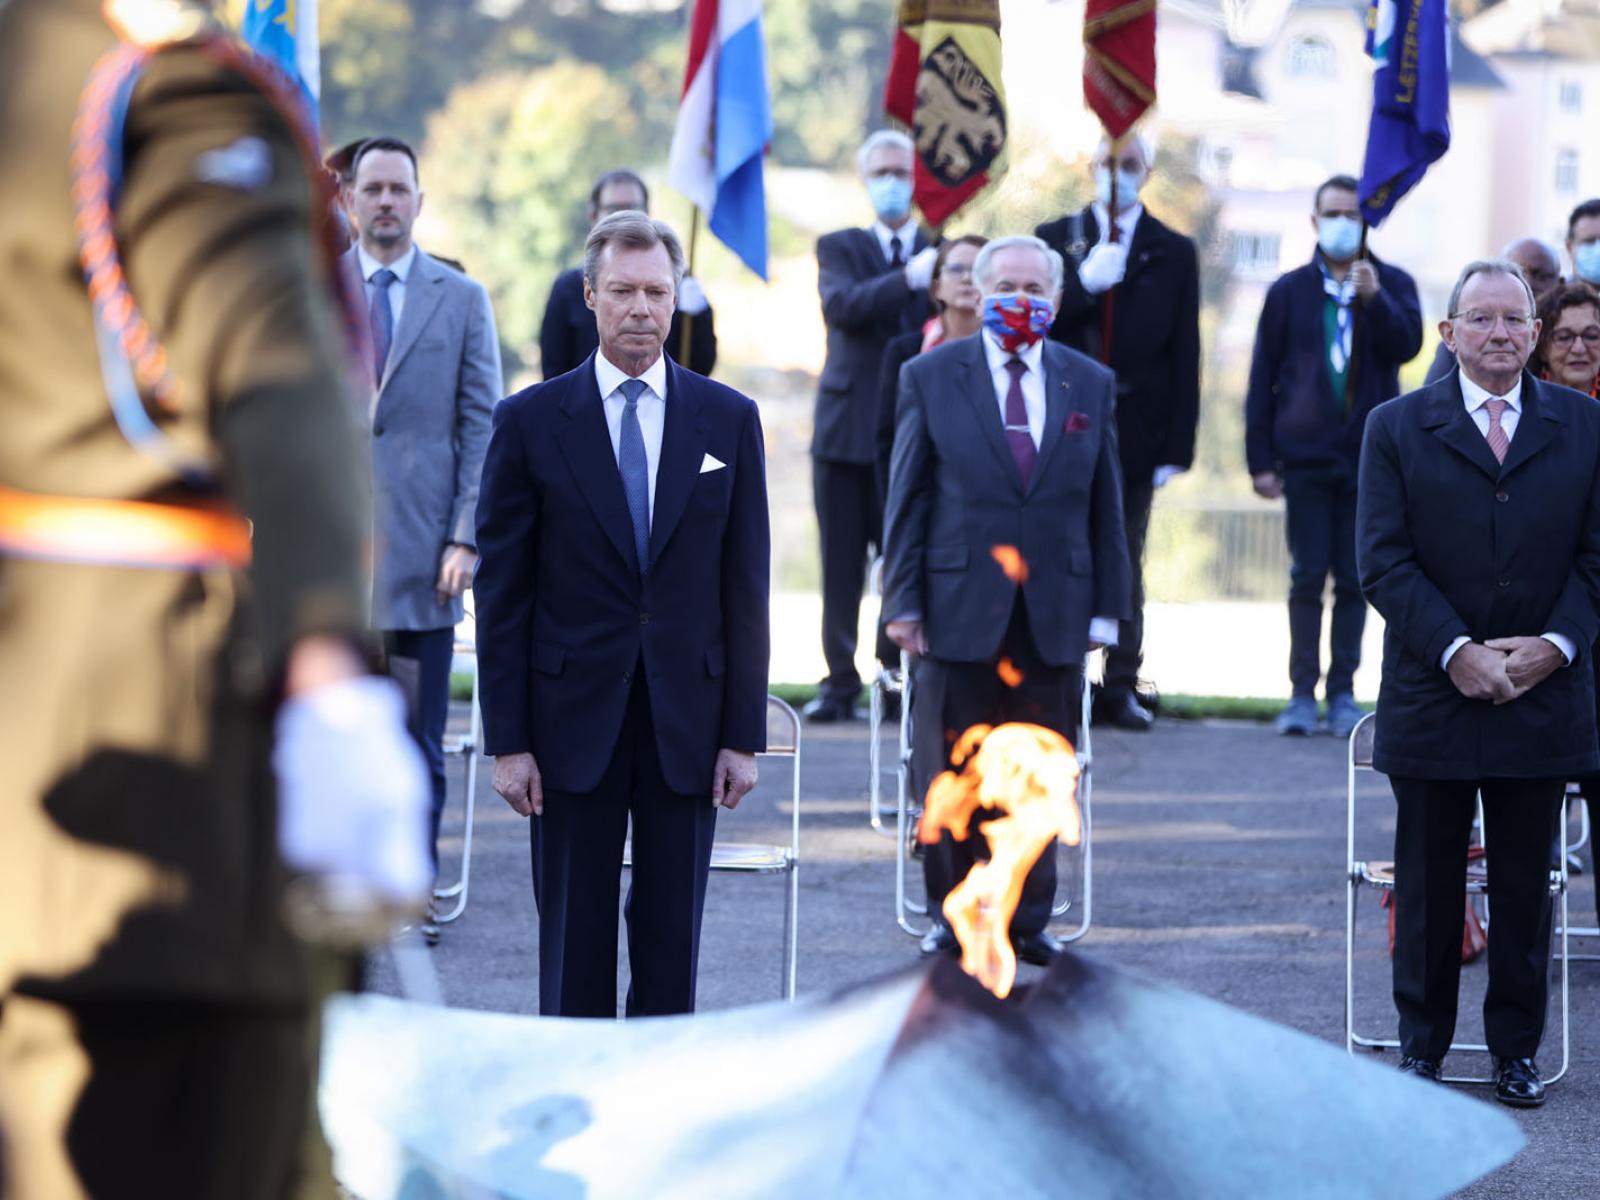 Le Grand-Duc et les invités durant l'hommage au peuple luxembourgeois